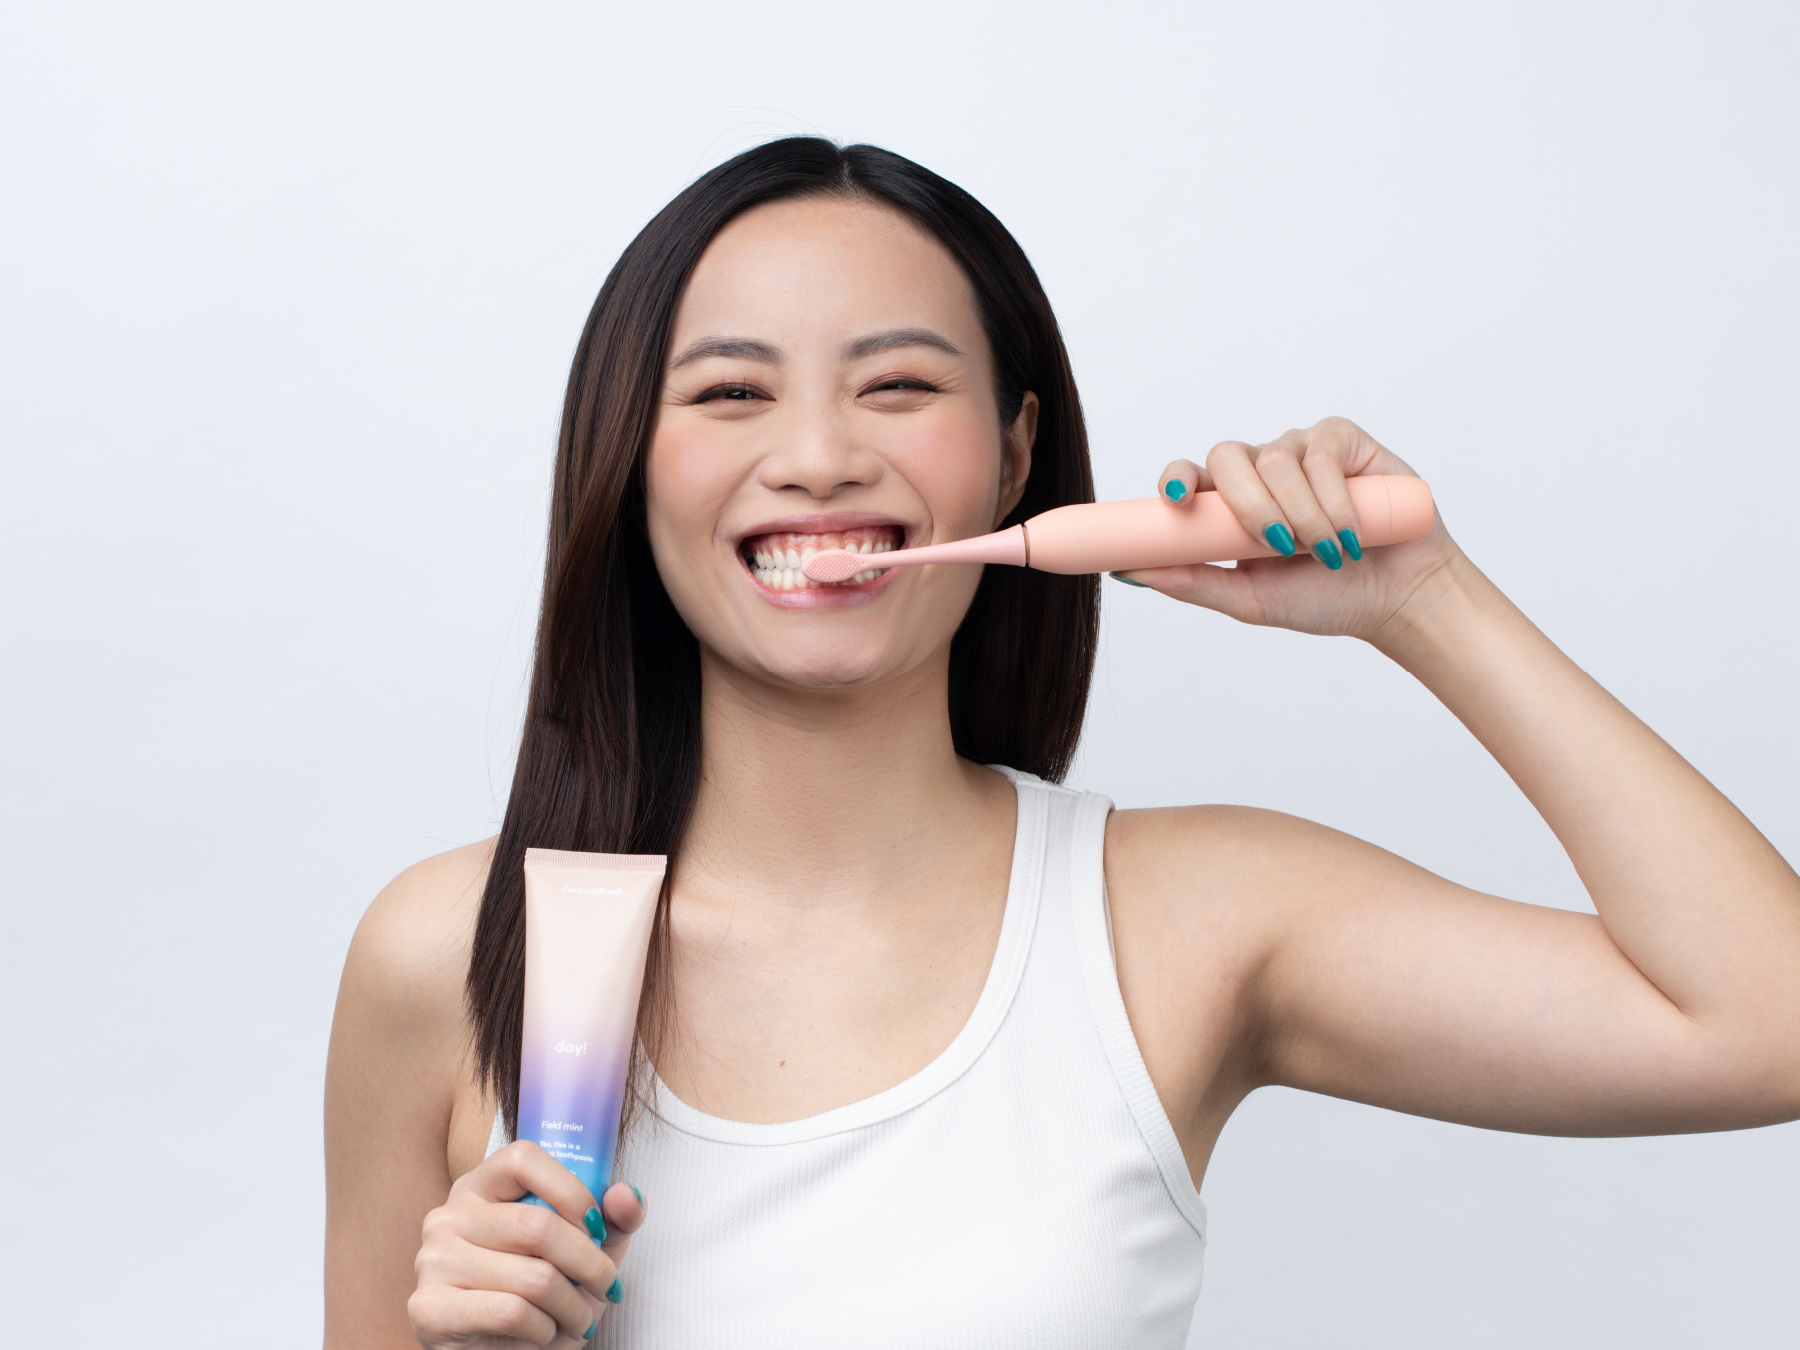 Girl brushing her teeth with ZenyumSonic Electric Toothbrush